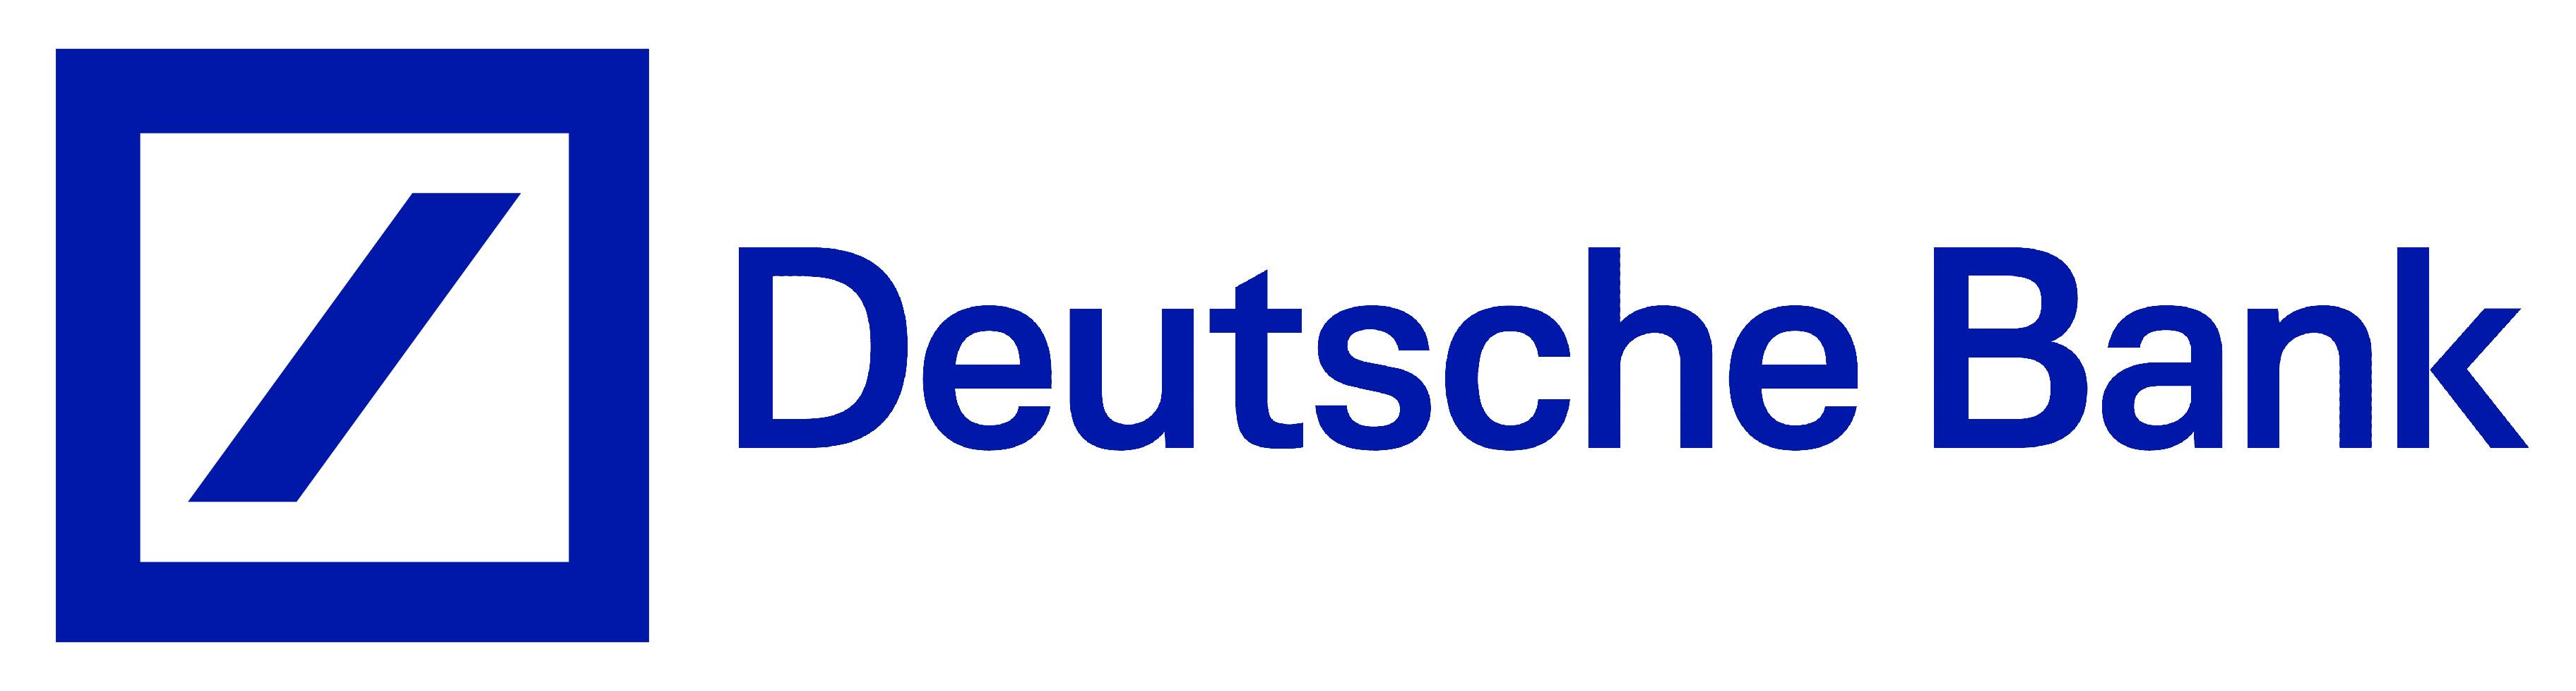 Deutsche Bank Logo - Color-Deutsche-Bank-Logo - Oliver Heath